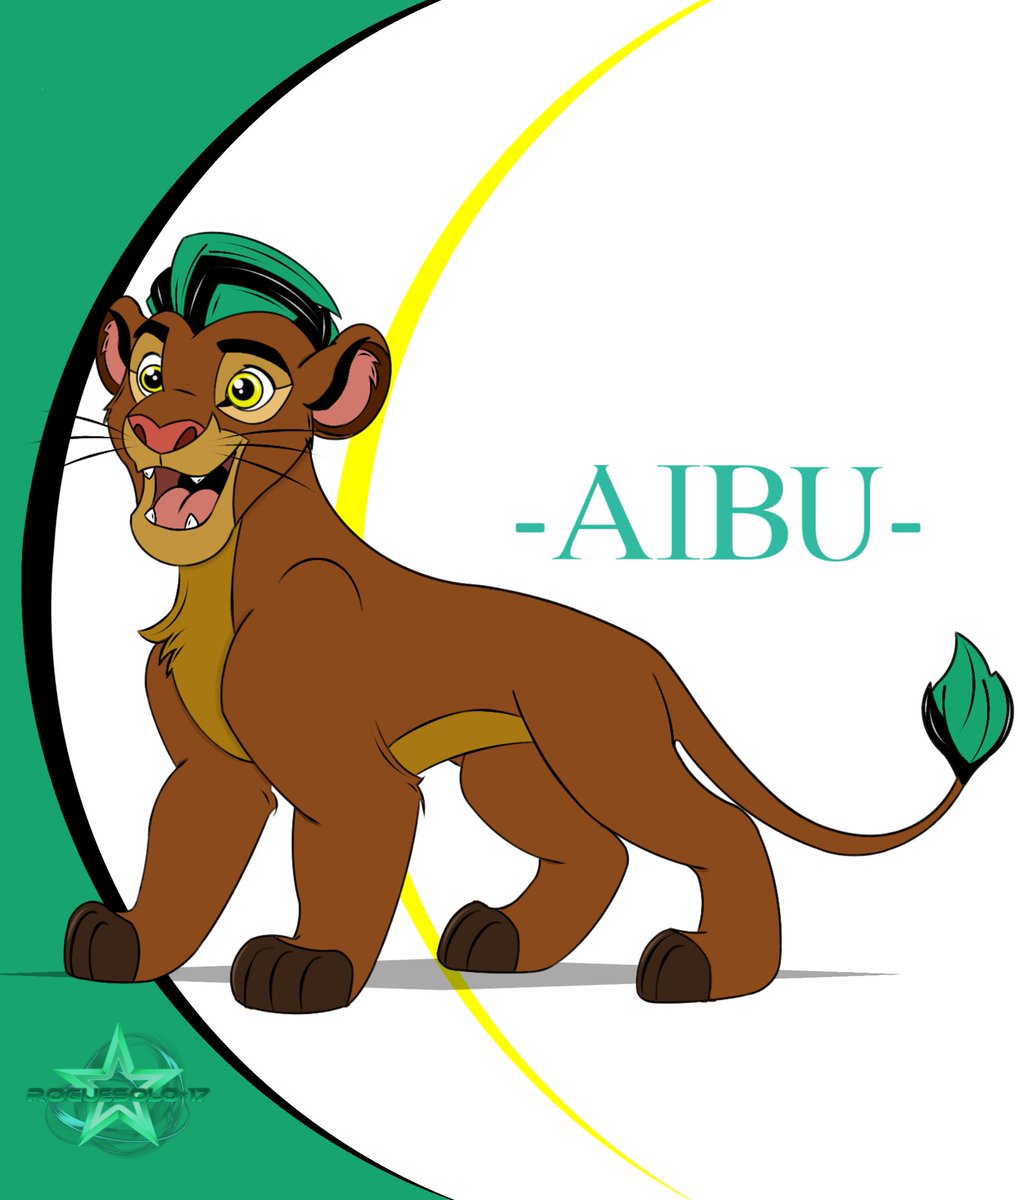 Aibu's Grown so fast 🥲😂
#Lionking #OC #Fanart